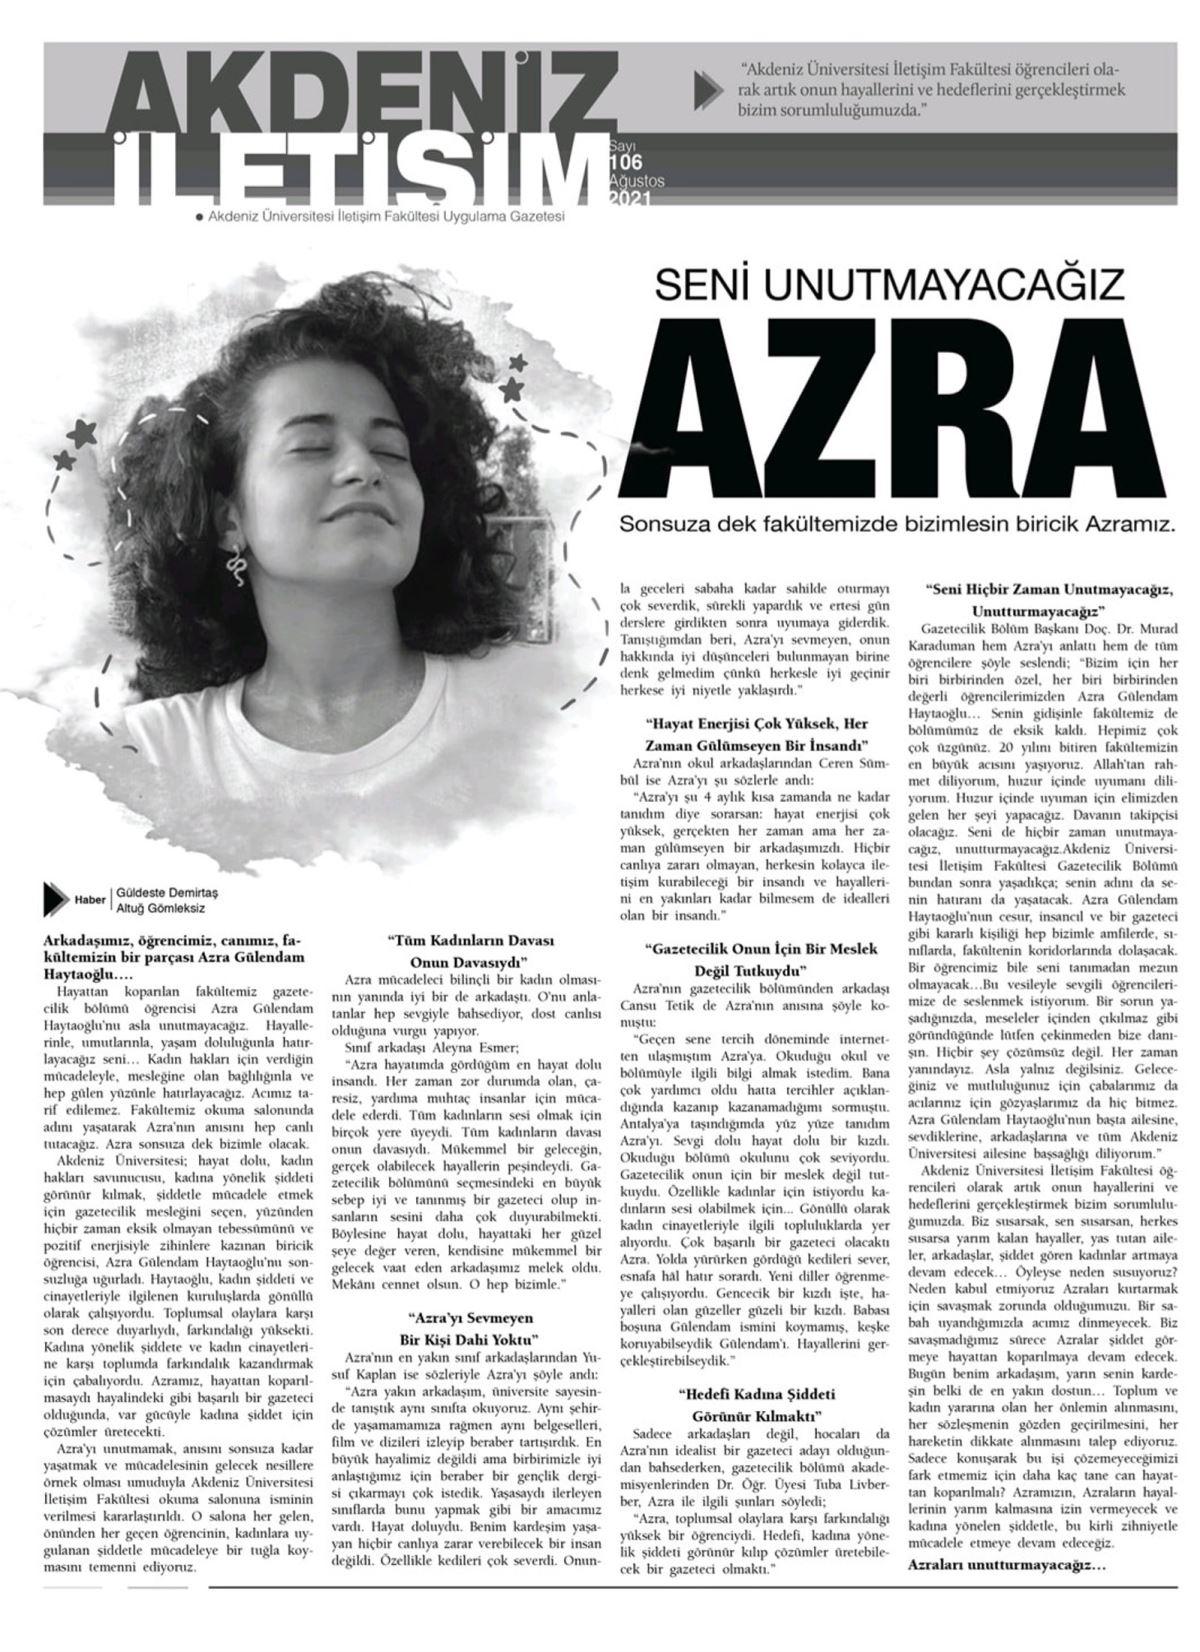 Katledilen Azra'nın haberini, gözyaşlarıyla yazdılar